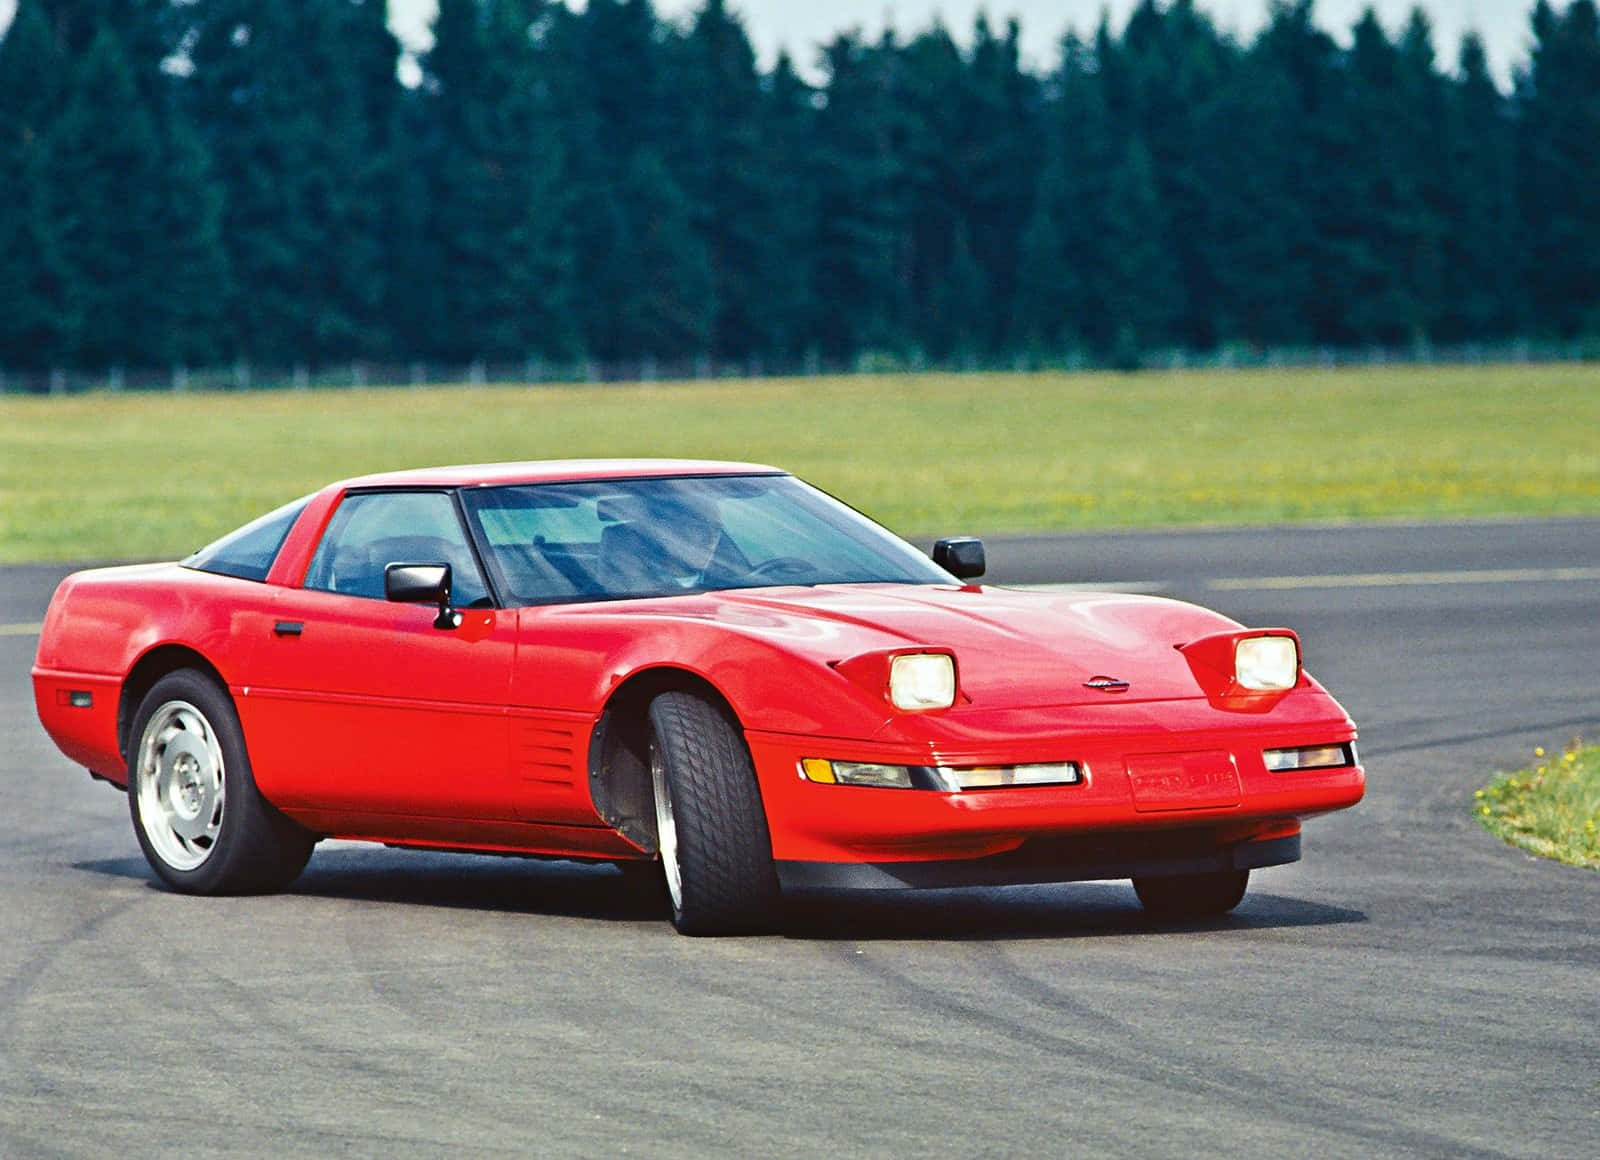 "A classic American sports car — The C4 Corvette"